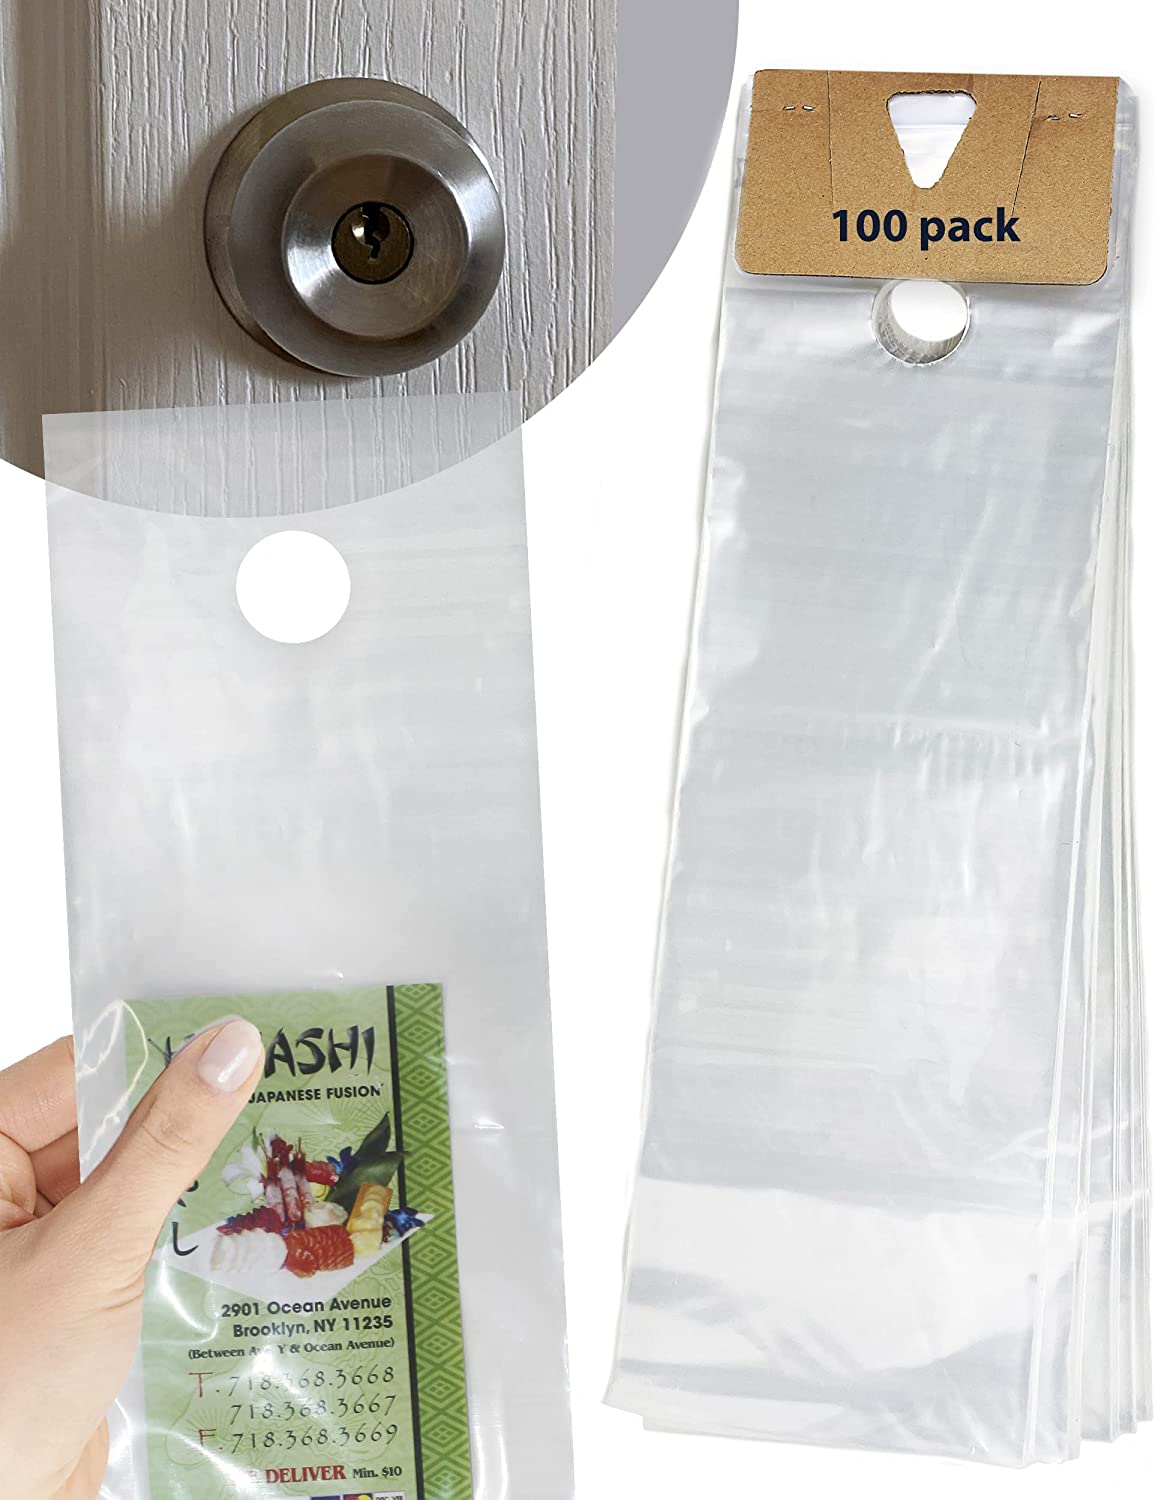 Skywin 100 Plastic Door Hanger Bags 6 x 19 inches - Clear Door Hanger Bags  Protects Flyers, Brochures, Notices, Printed Materials - Waterproof and  Secure Door Knob Hanger for Outdoor Use (100) 